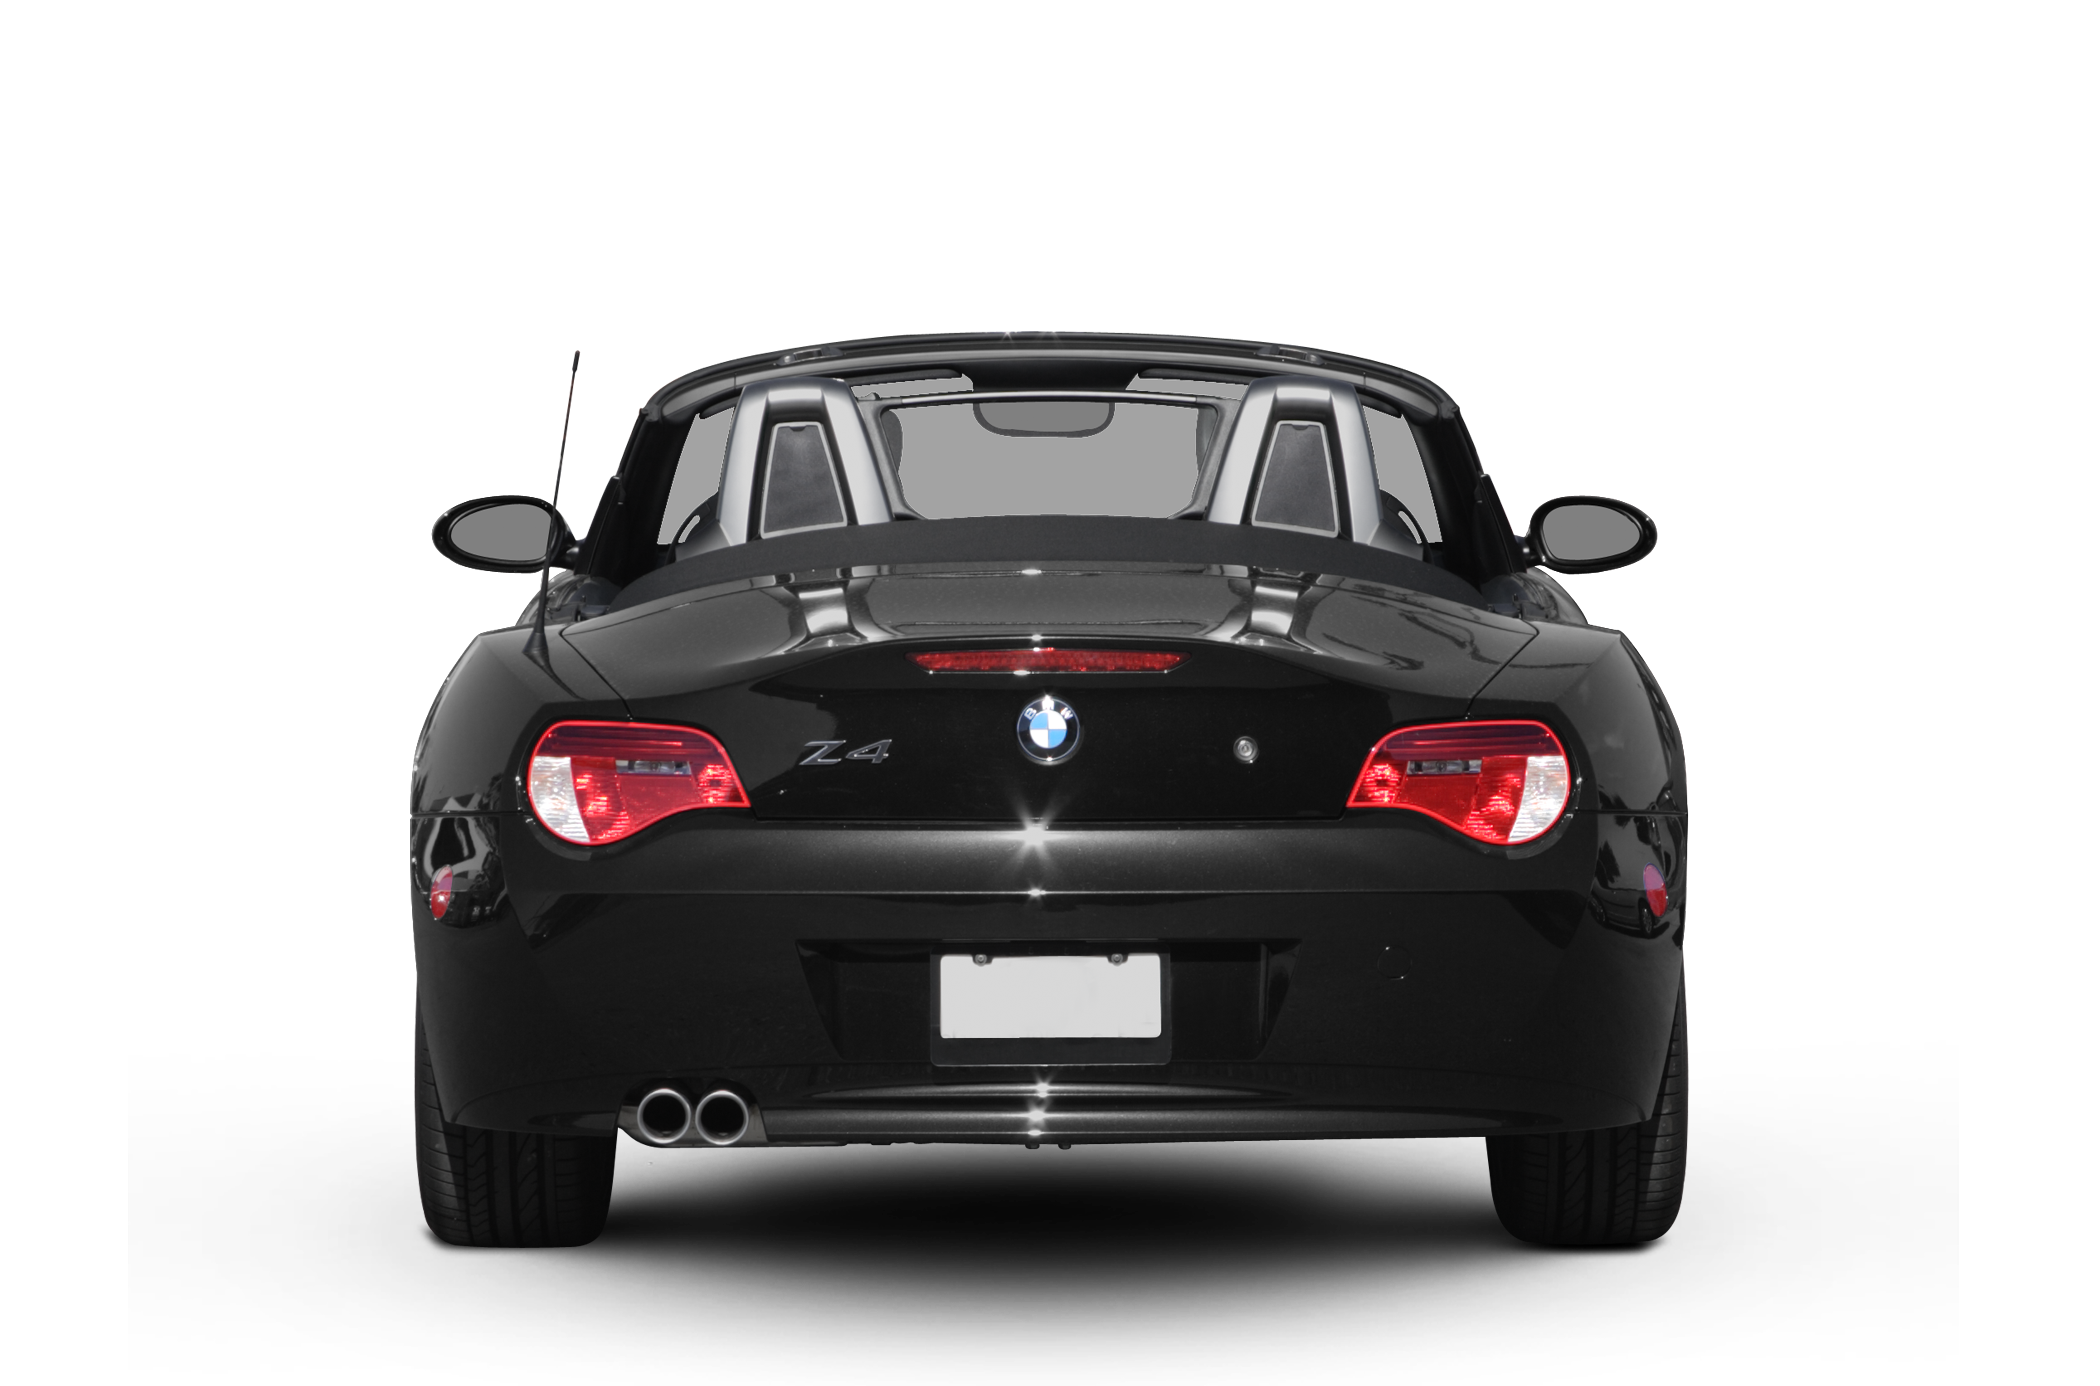 2008 BMW Z4